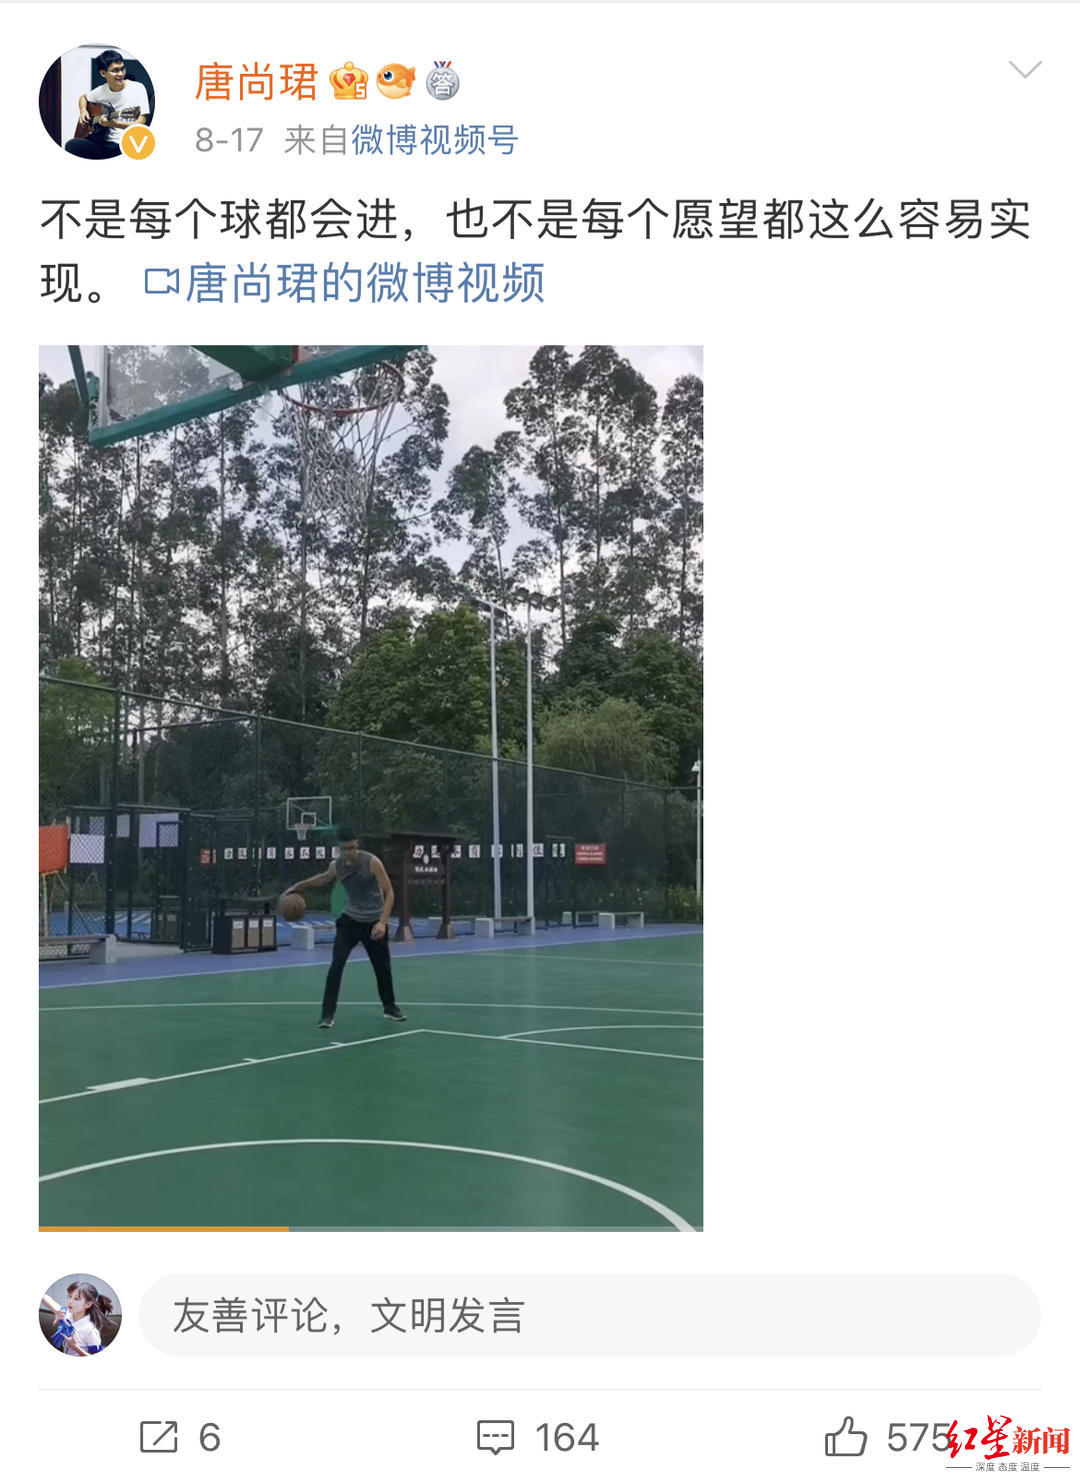 ▲唐尚珺在社交账号上发布自己的状态 视频截图